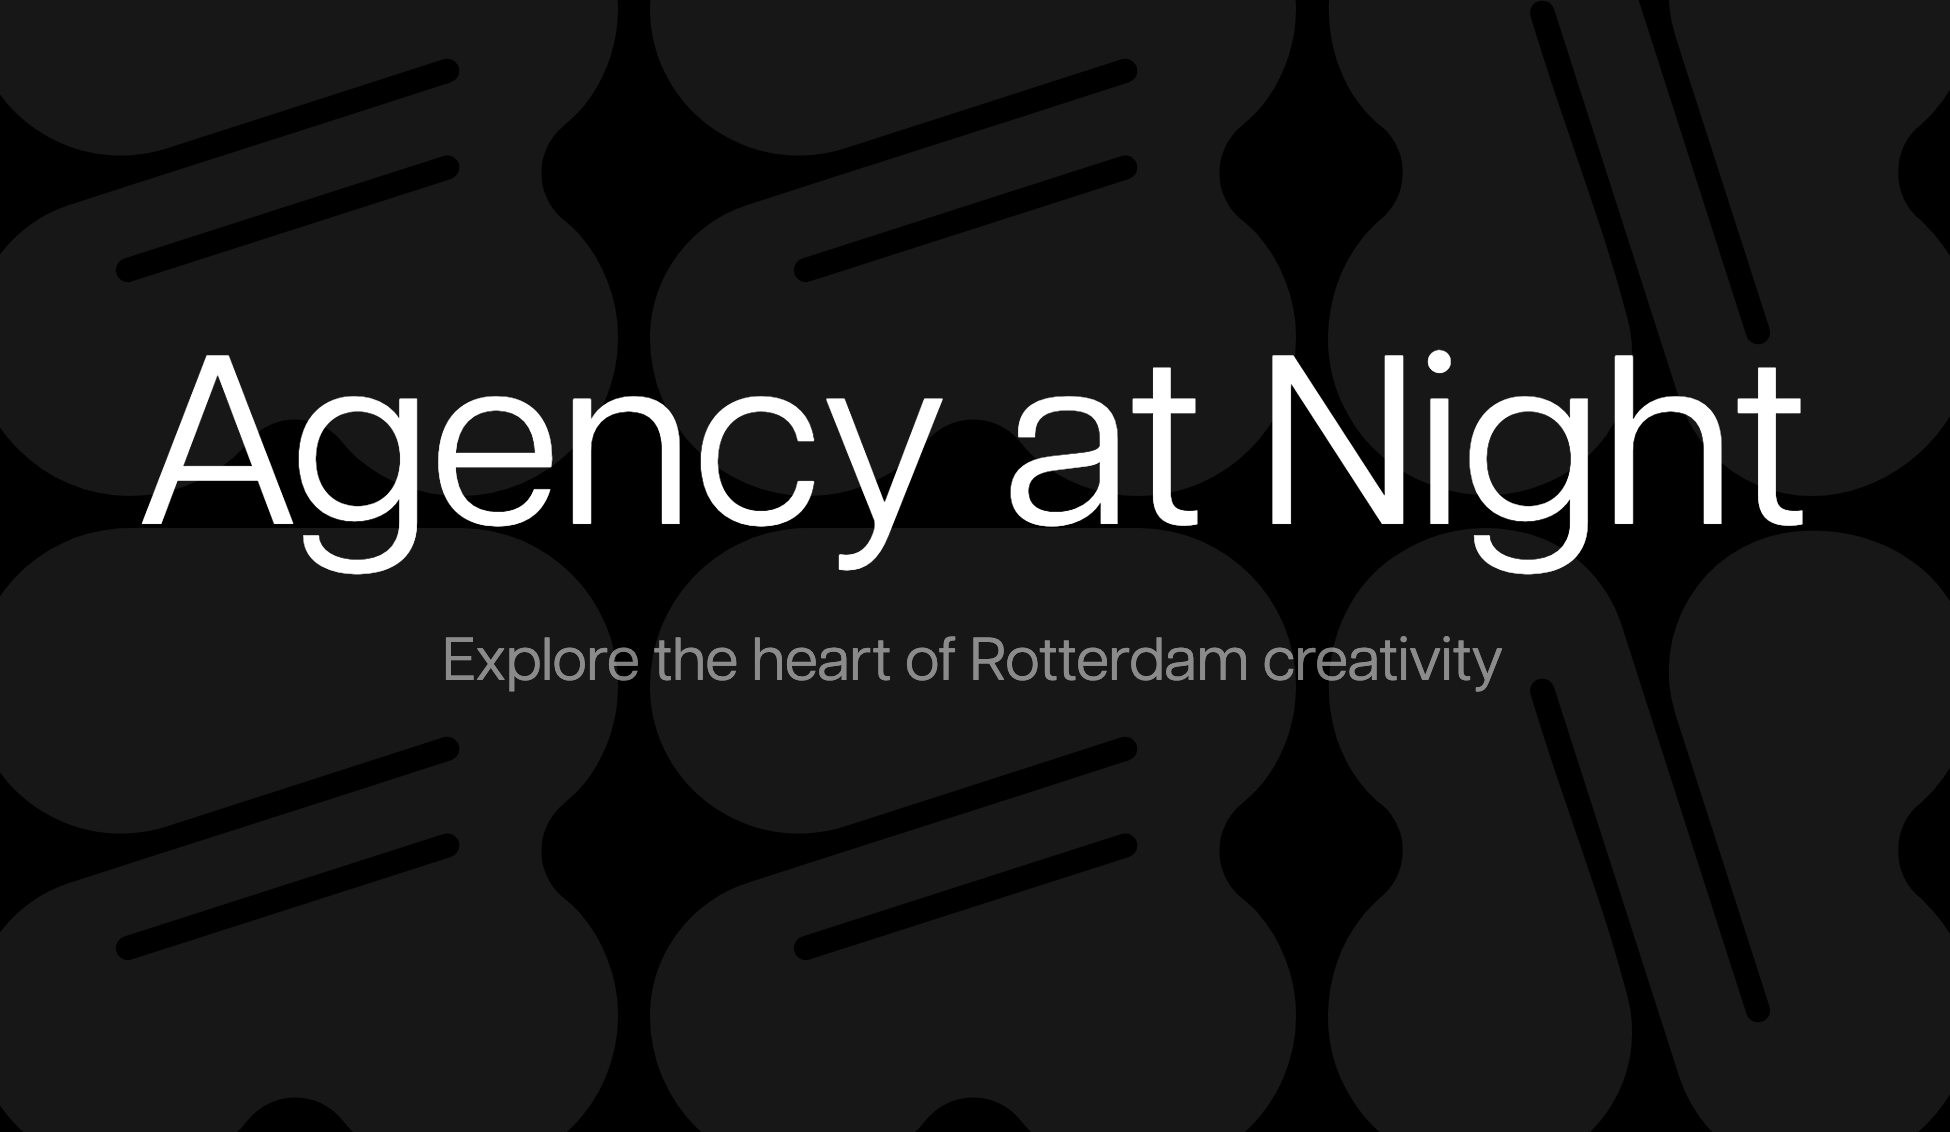 Eerste editie Agency at Night pakt uit met bijna 200 sprekers en workshops